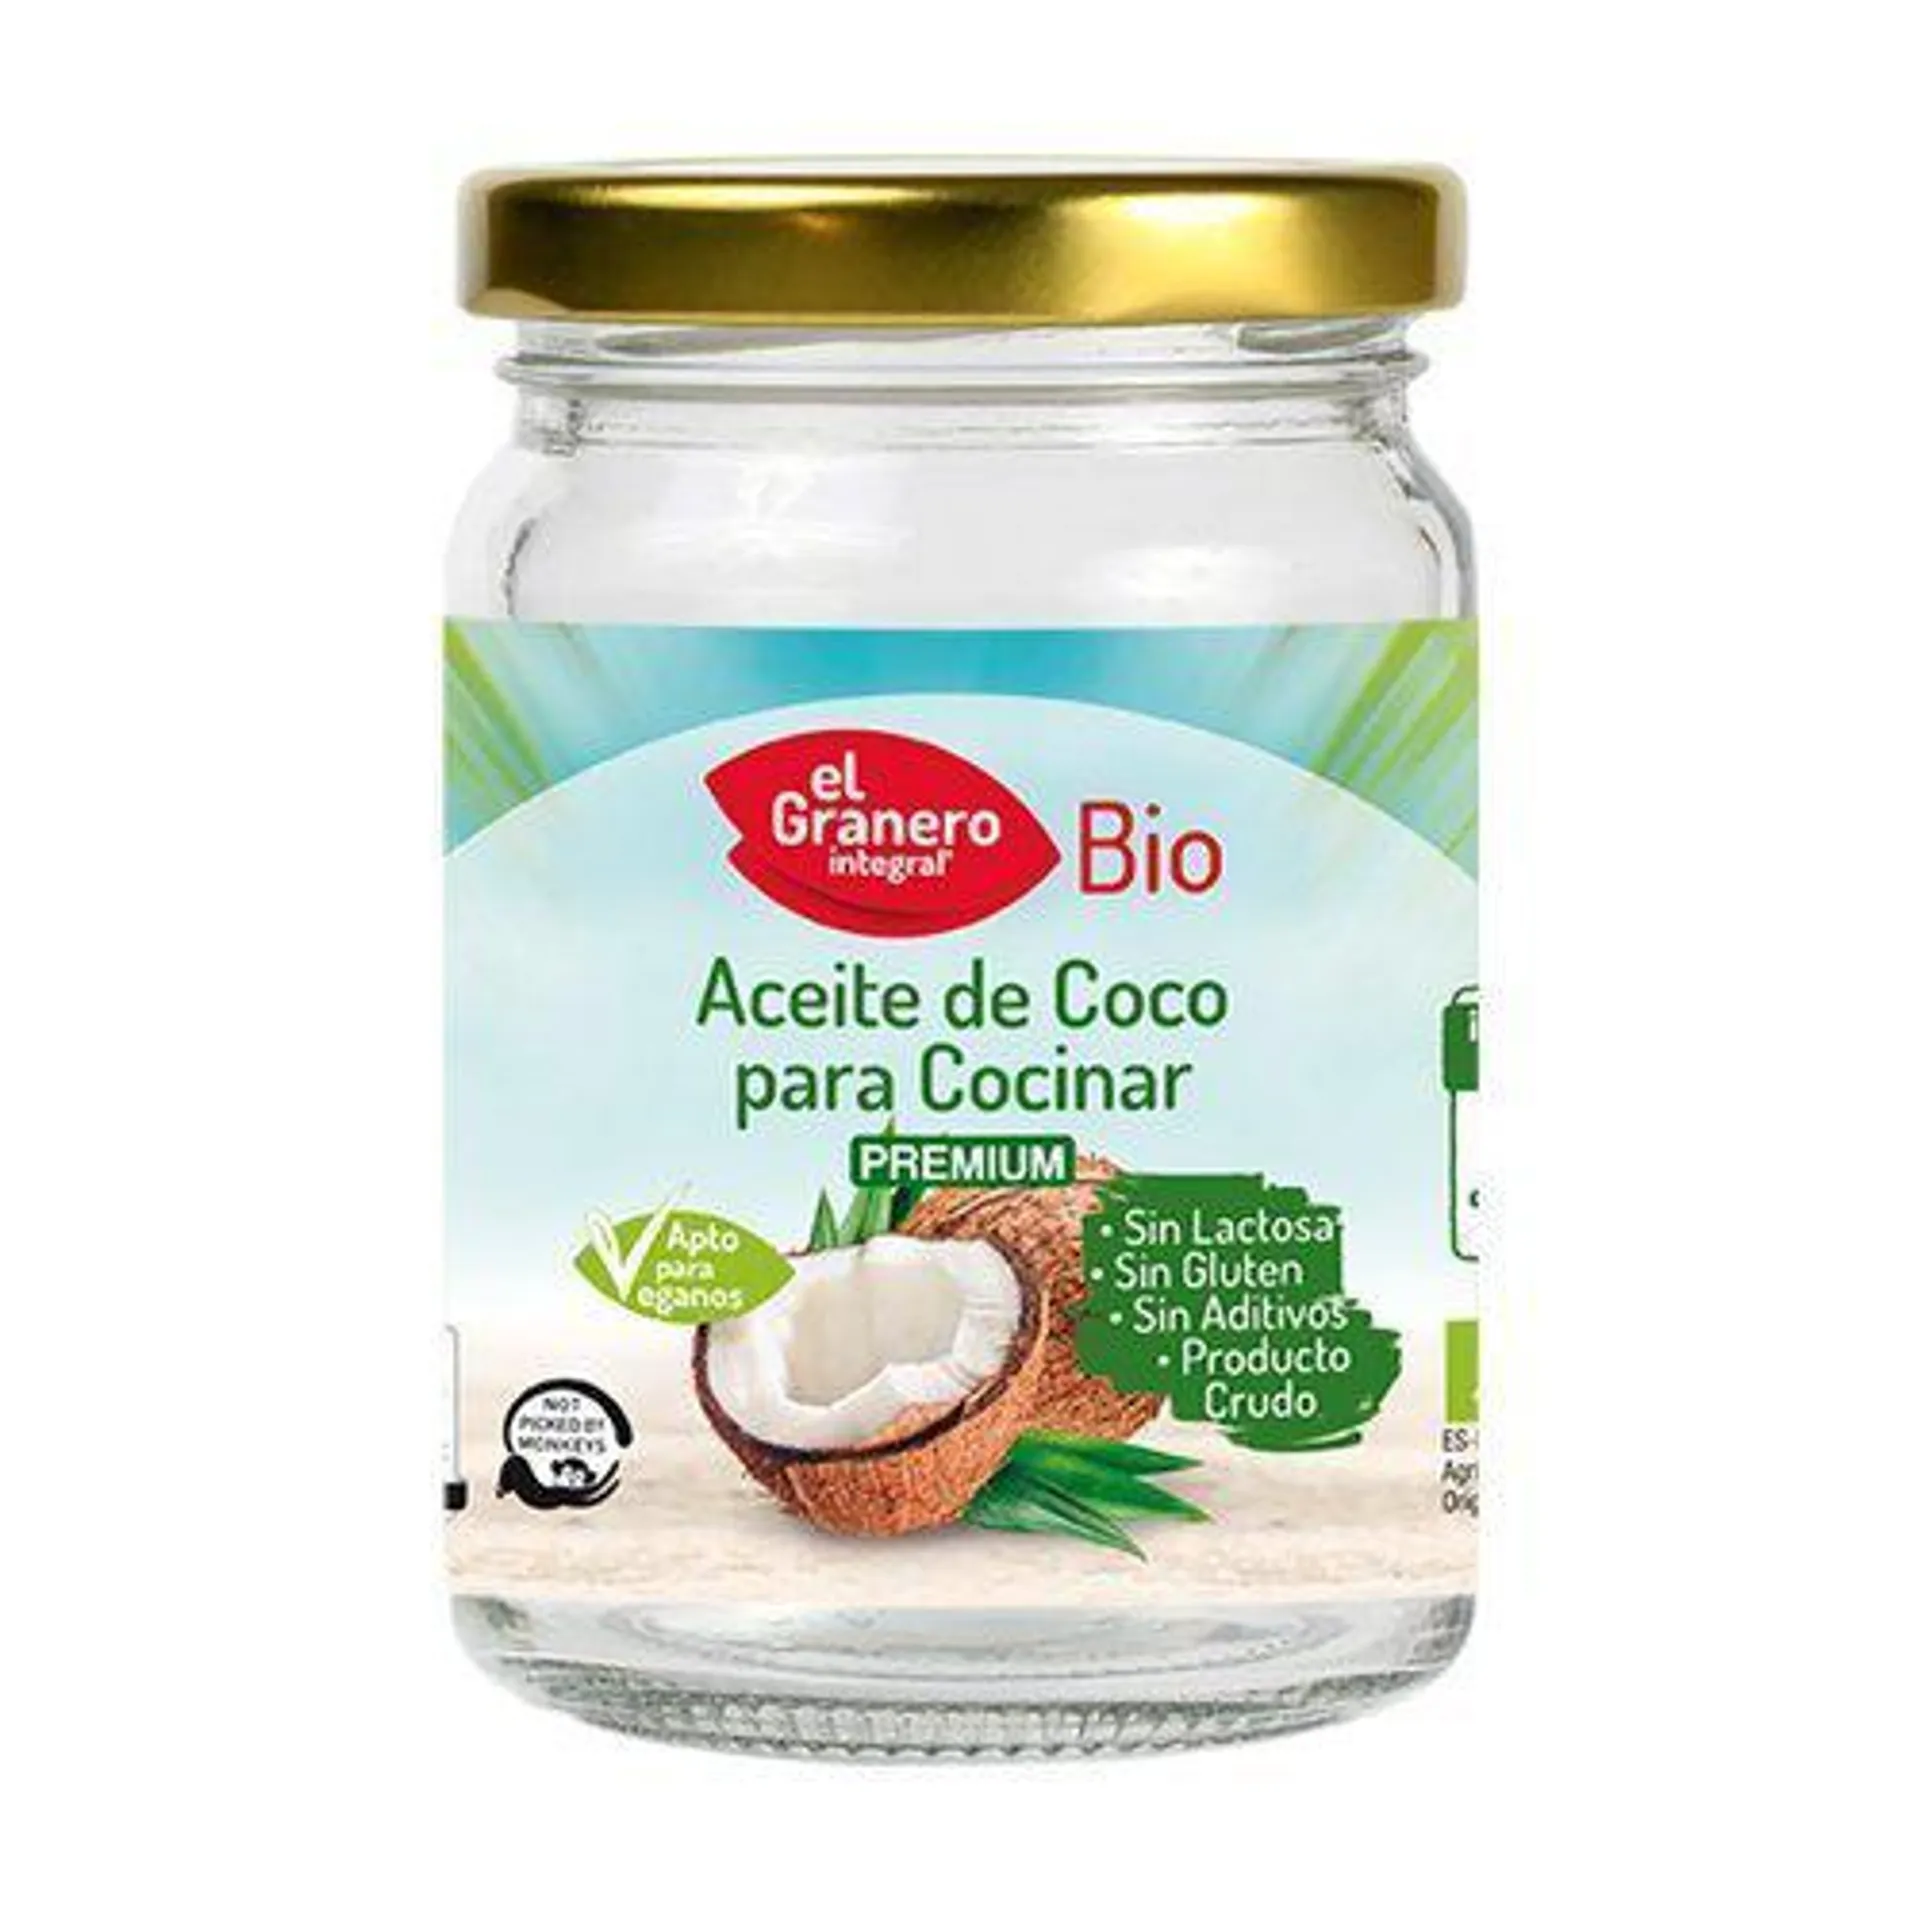 Aceite de Coco para Cocinar Bio (500 ml) – El Granero Integral